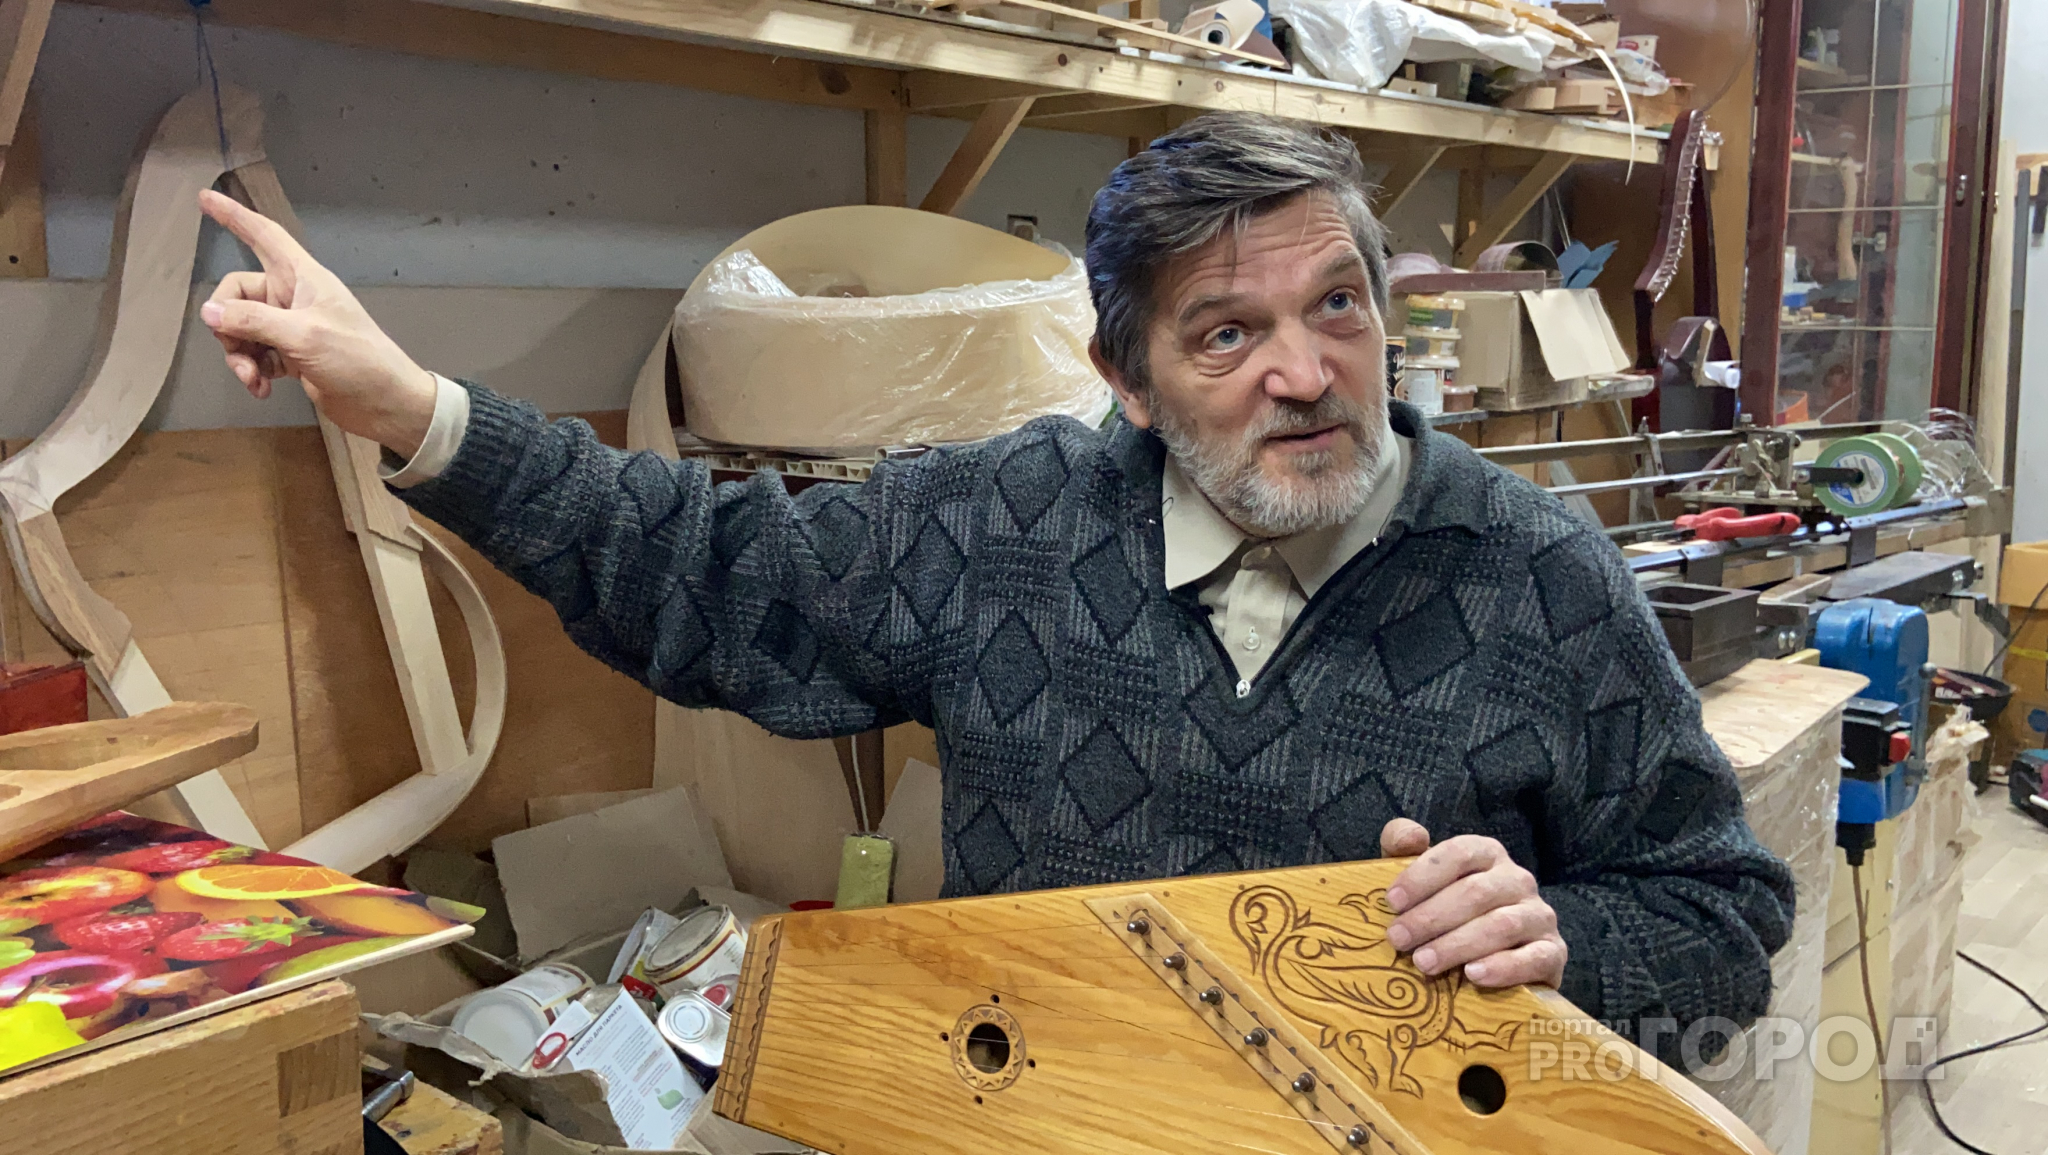 Мастер из Алатыря больше 40 лет изготавливает гусли: "Информацию об инструменте узнавал от бабушек из деревень"